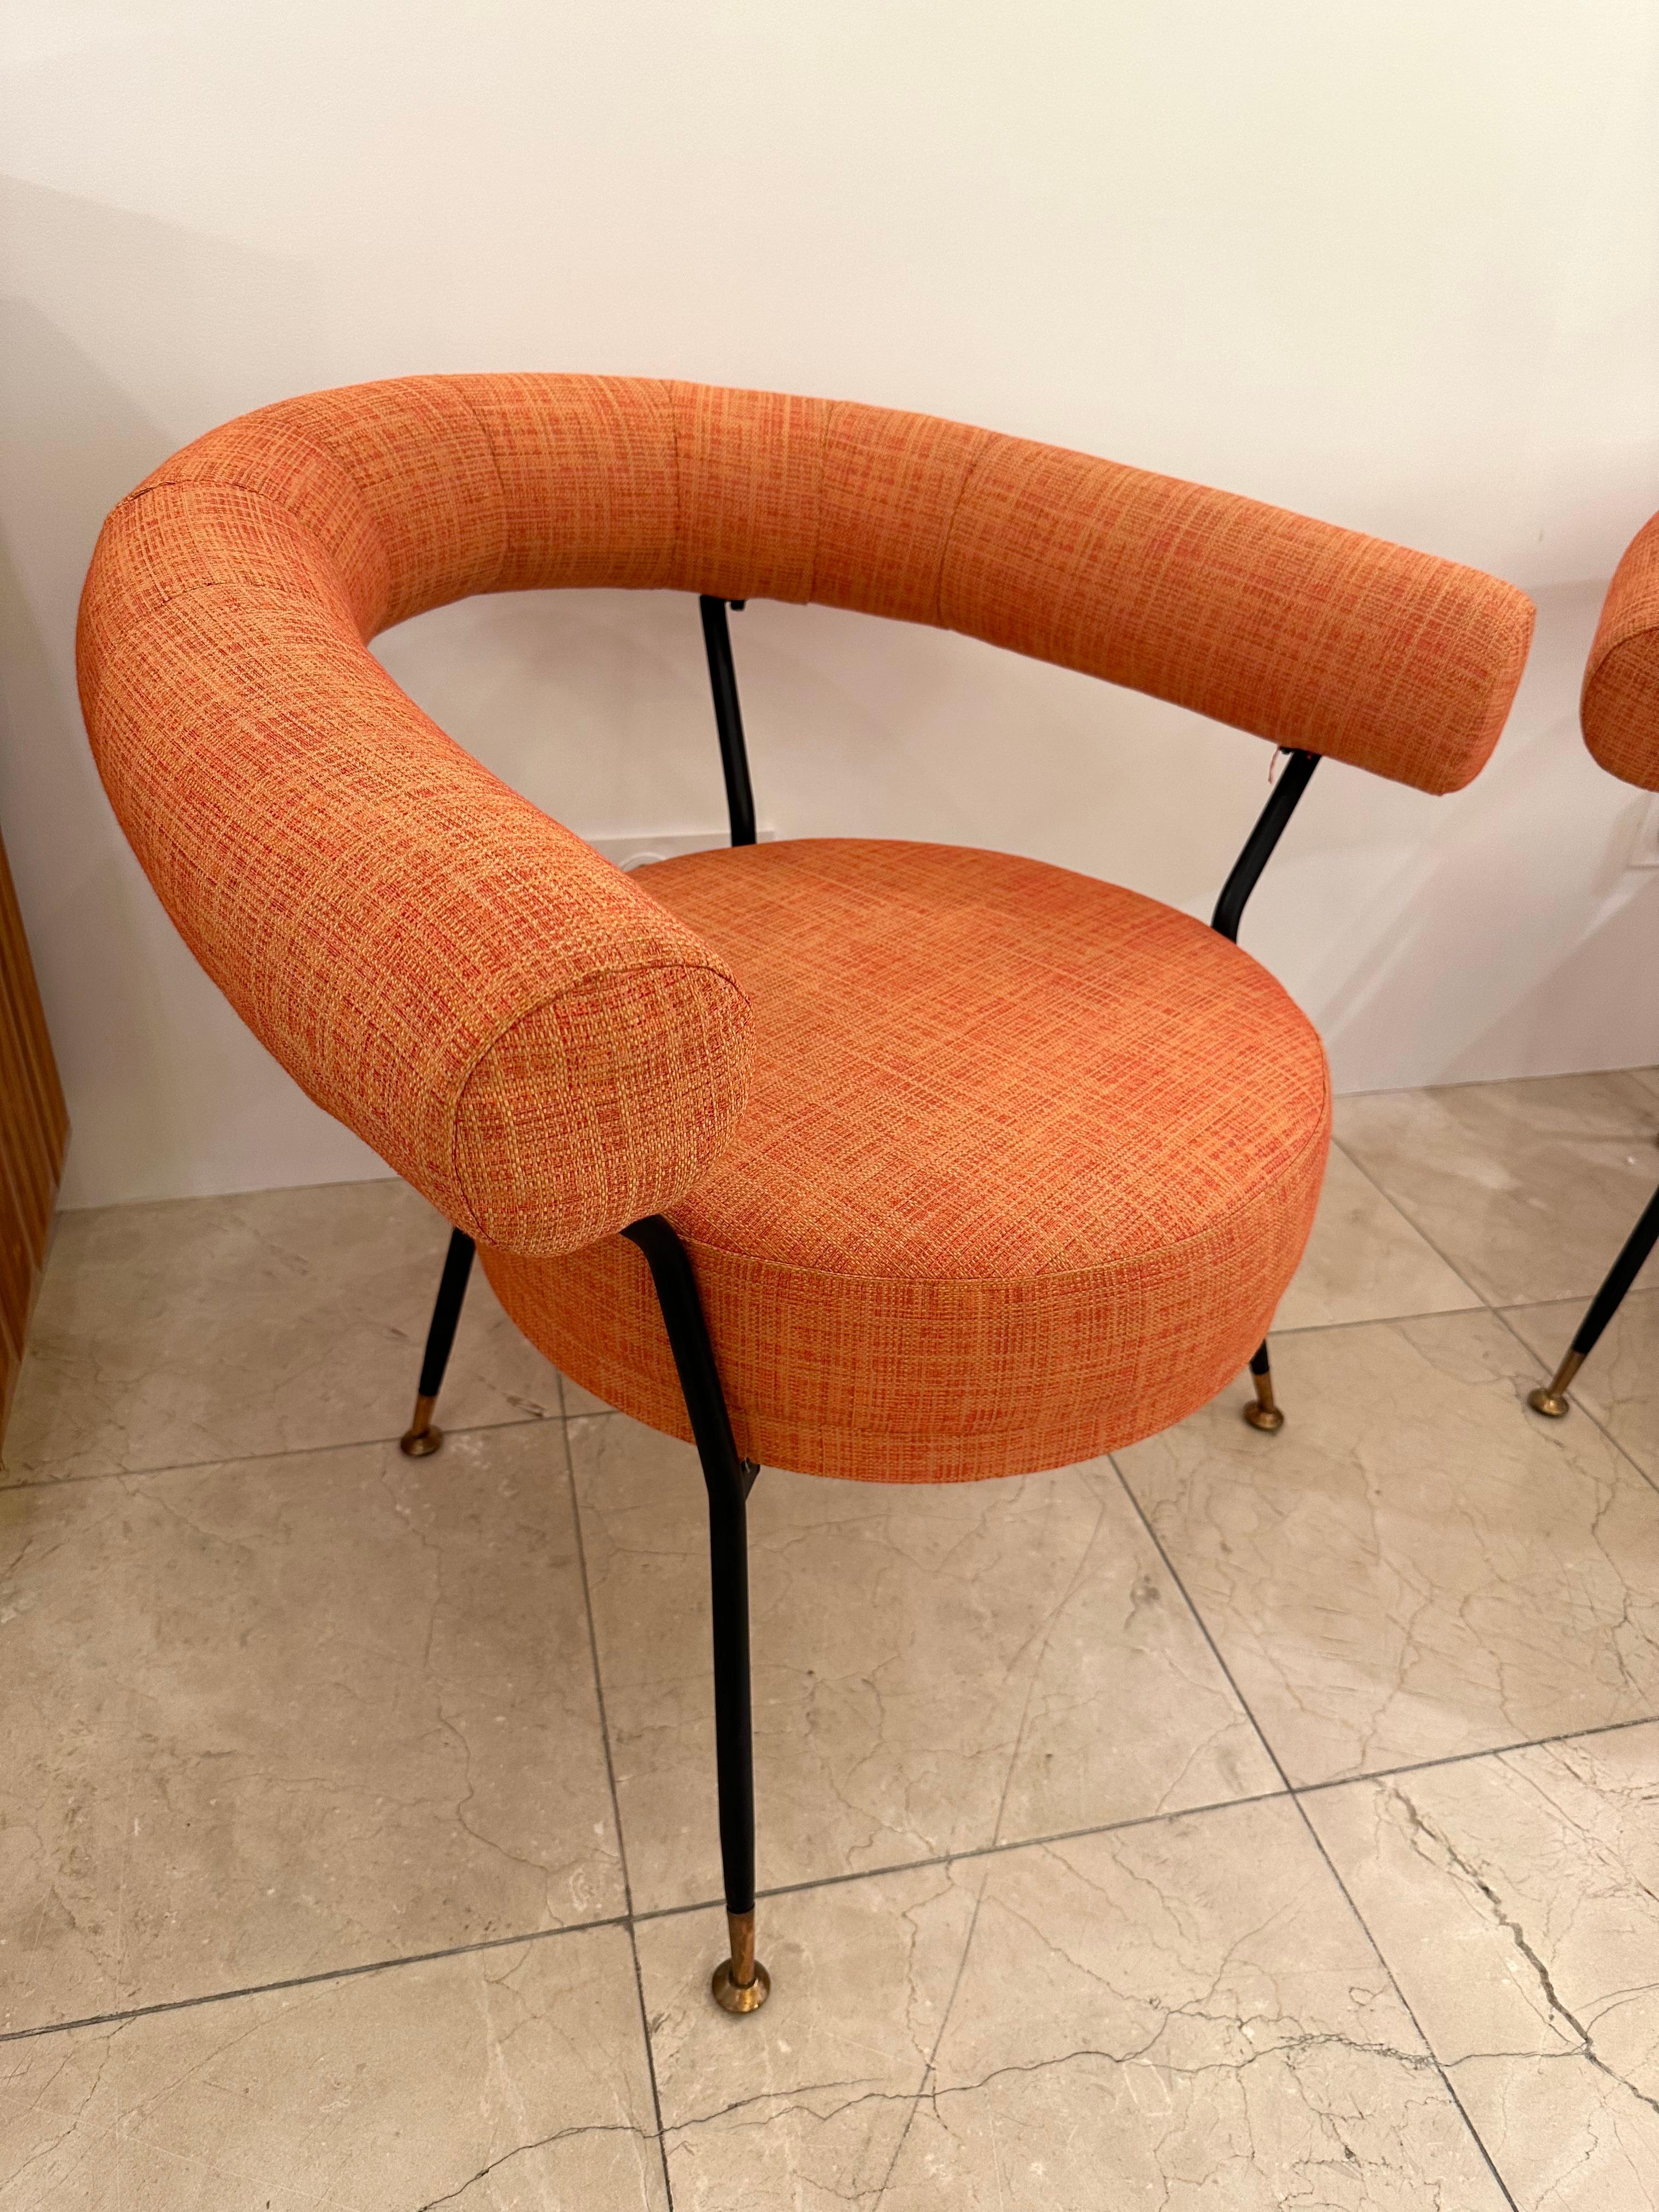 Rare paire de fauteuils lounge chairs italiens mid-century modern de l'éditeur IPE Bologna Italy. Structure en métal noir, laiton. Nouvelle tapisserie d'ameublement,  reupholstered. Des designers célèbres comme Gio Ponti, Gianfranco Frattini,